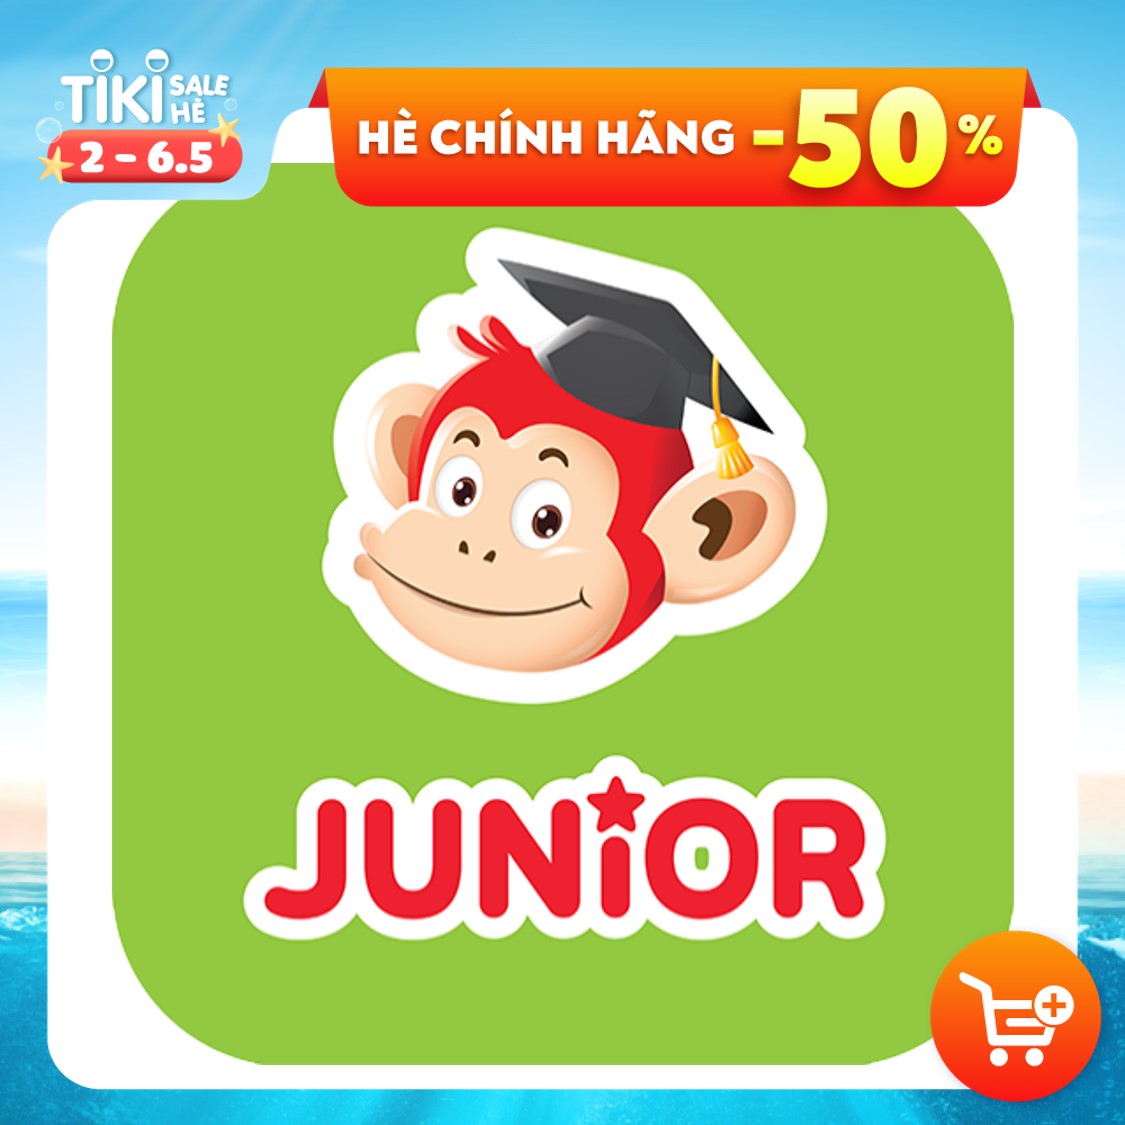 Hình ảnh [E-VOUCHER]- Monkey Junior - Tiếng Anh cho trẻ mới bắt đầu (Trọn đời/ 1 năm/ 2 năm) 